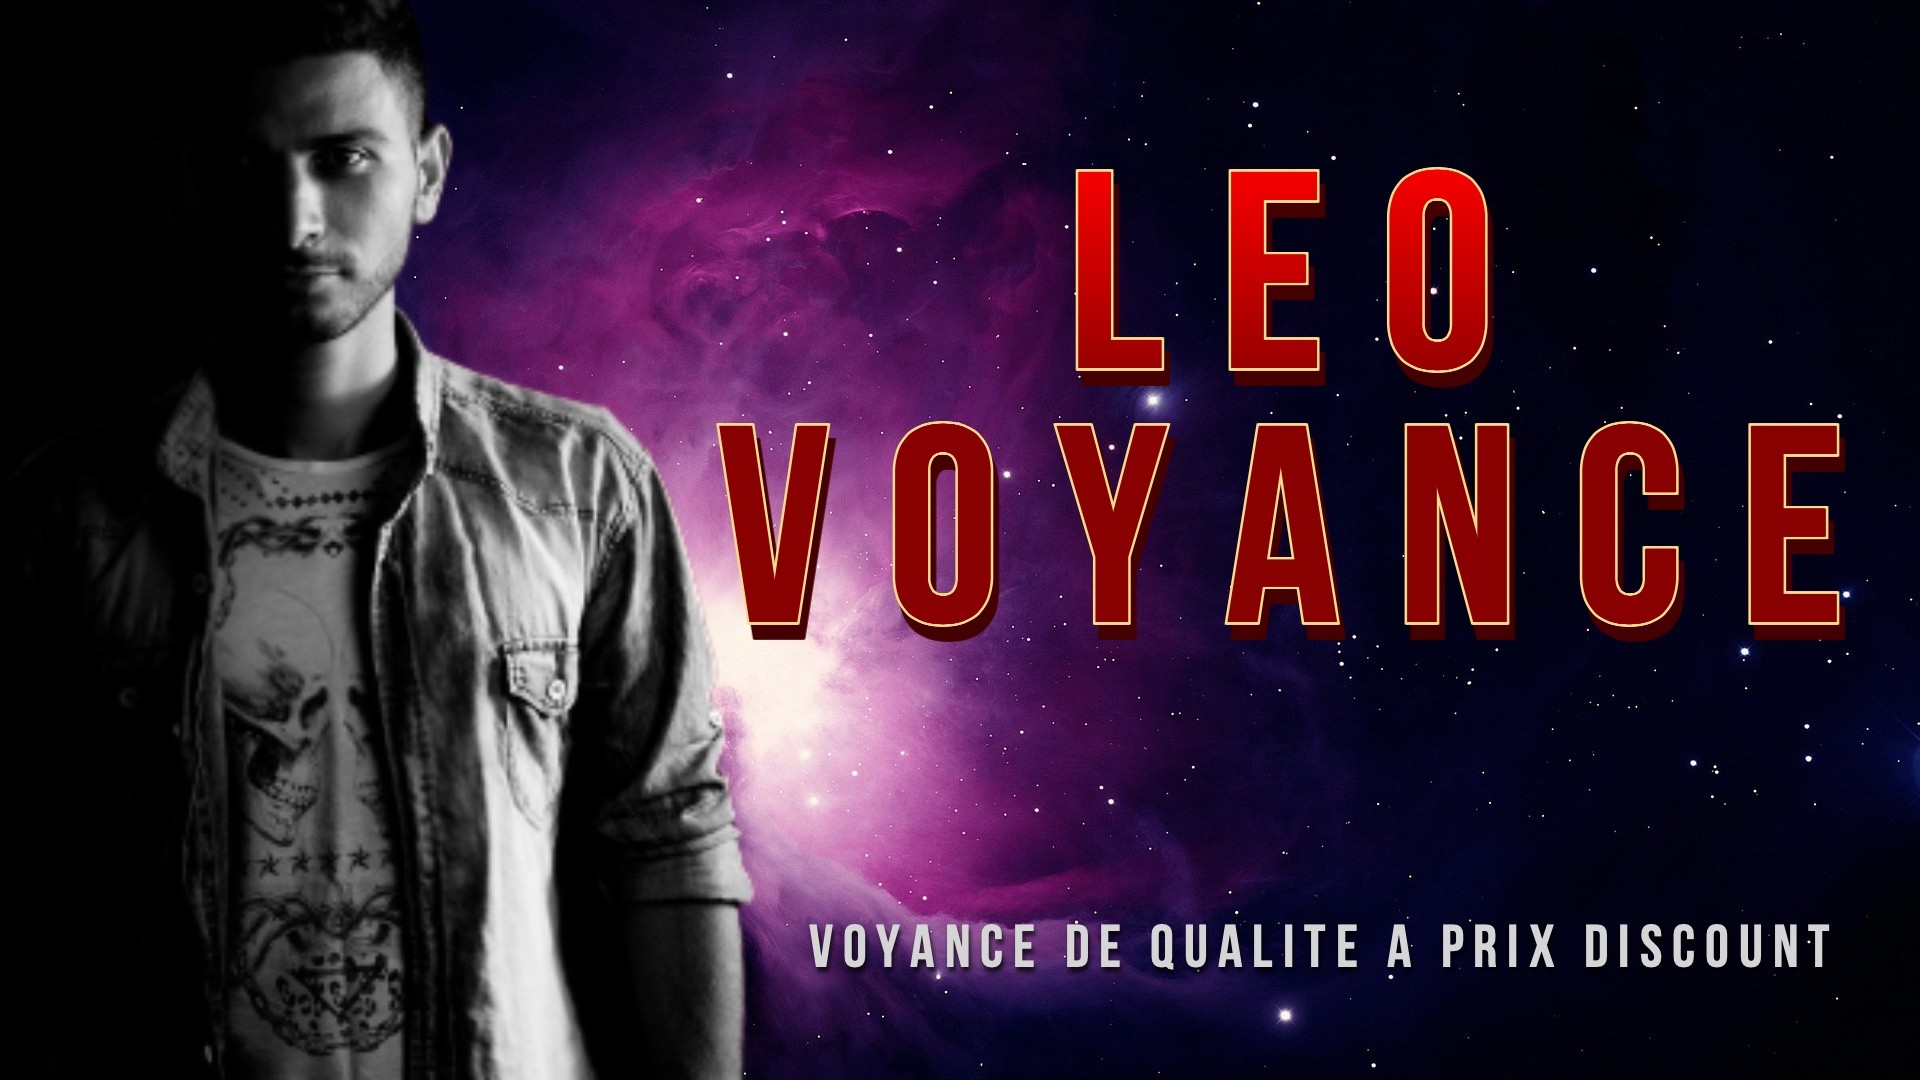 leo-voyance.fr